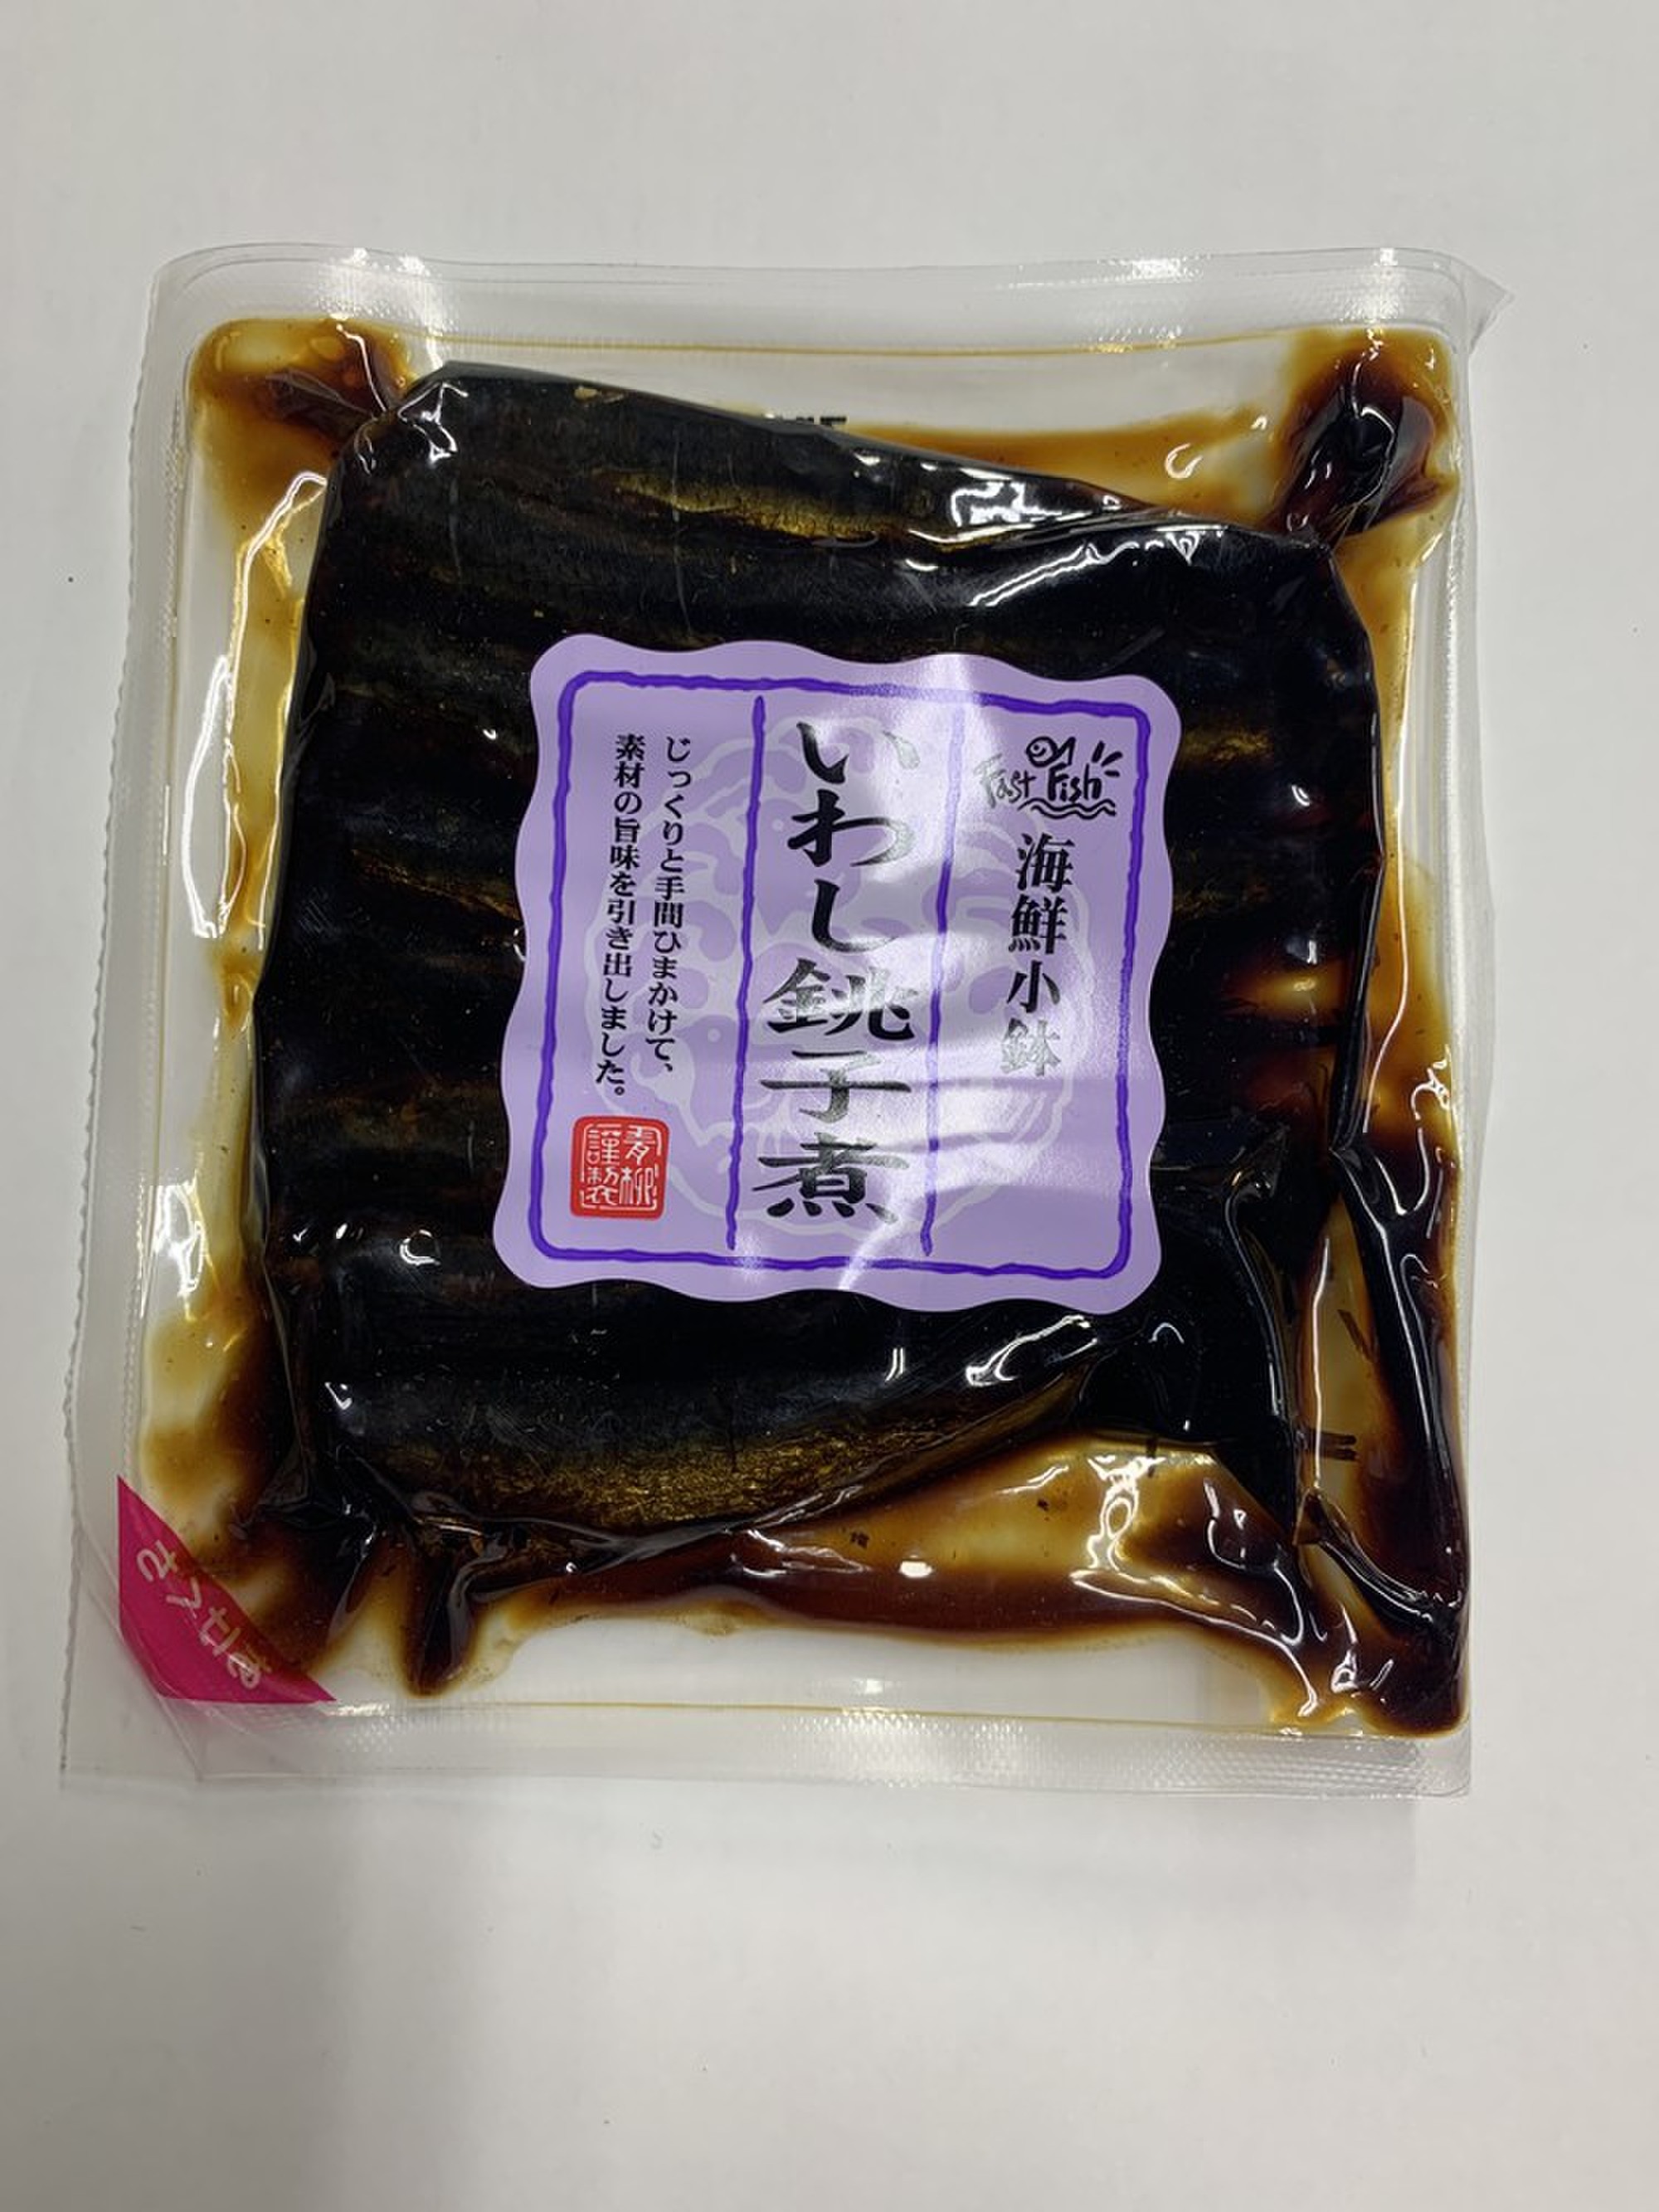 青柳のいわし銚子煮 100g | クックパッドマート - 毎日が楽しみになる、お買いもの。